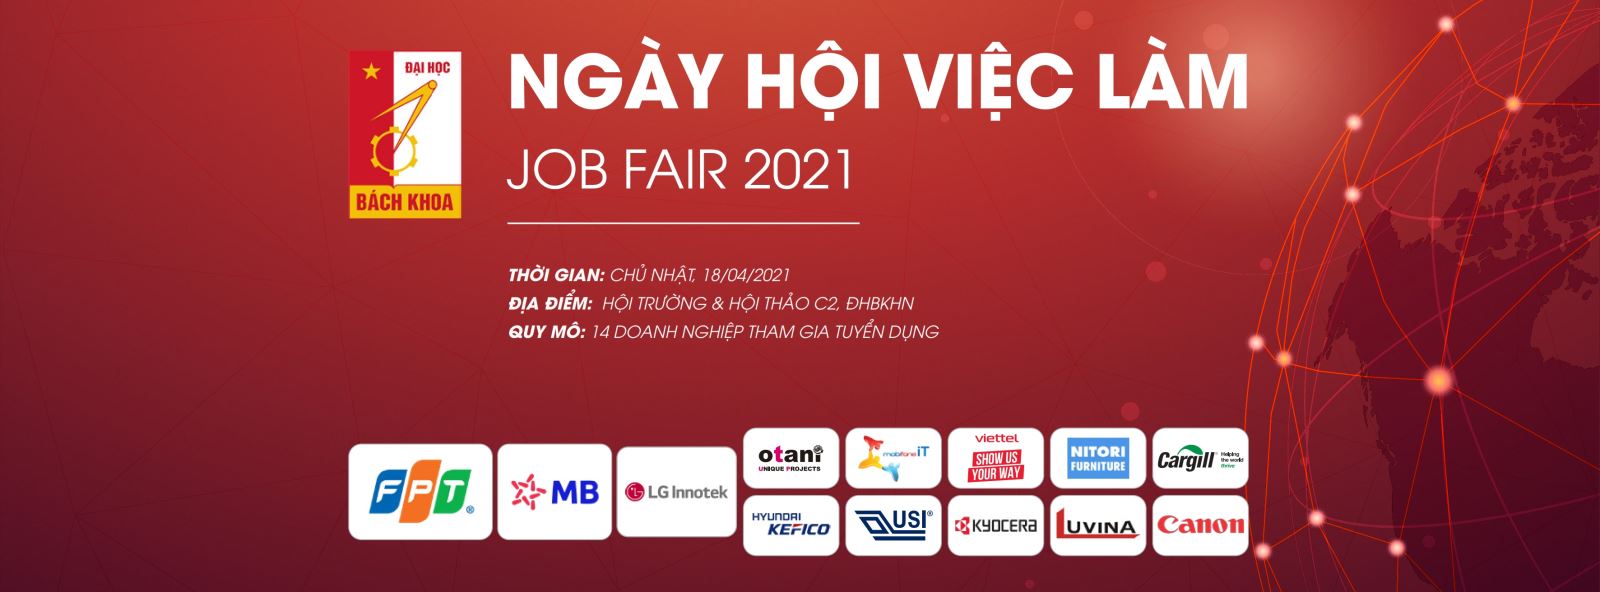 Job Fair 2021 – Ngày hội việc làm, hướng nghiệp tại Trường ĐH Bách khoa Hà Nội